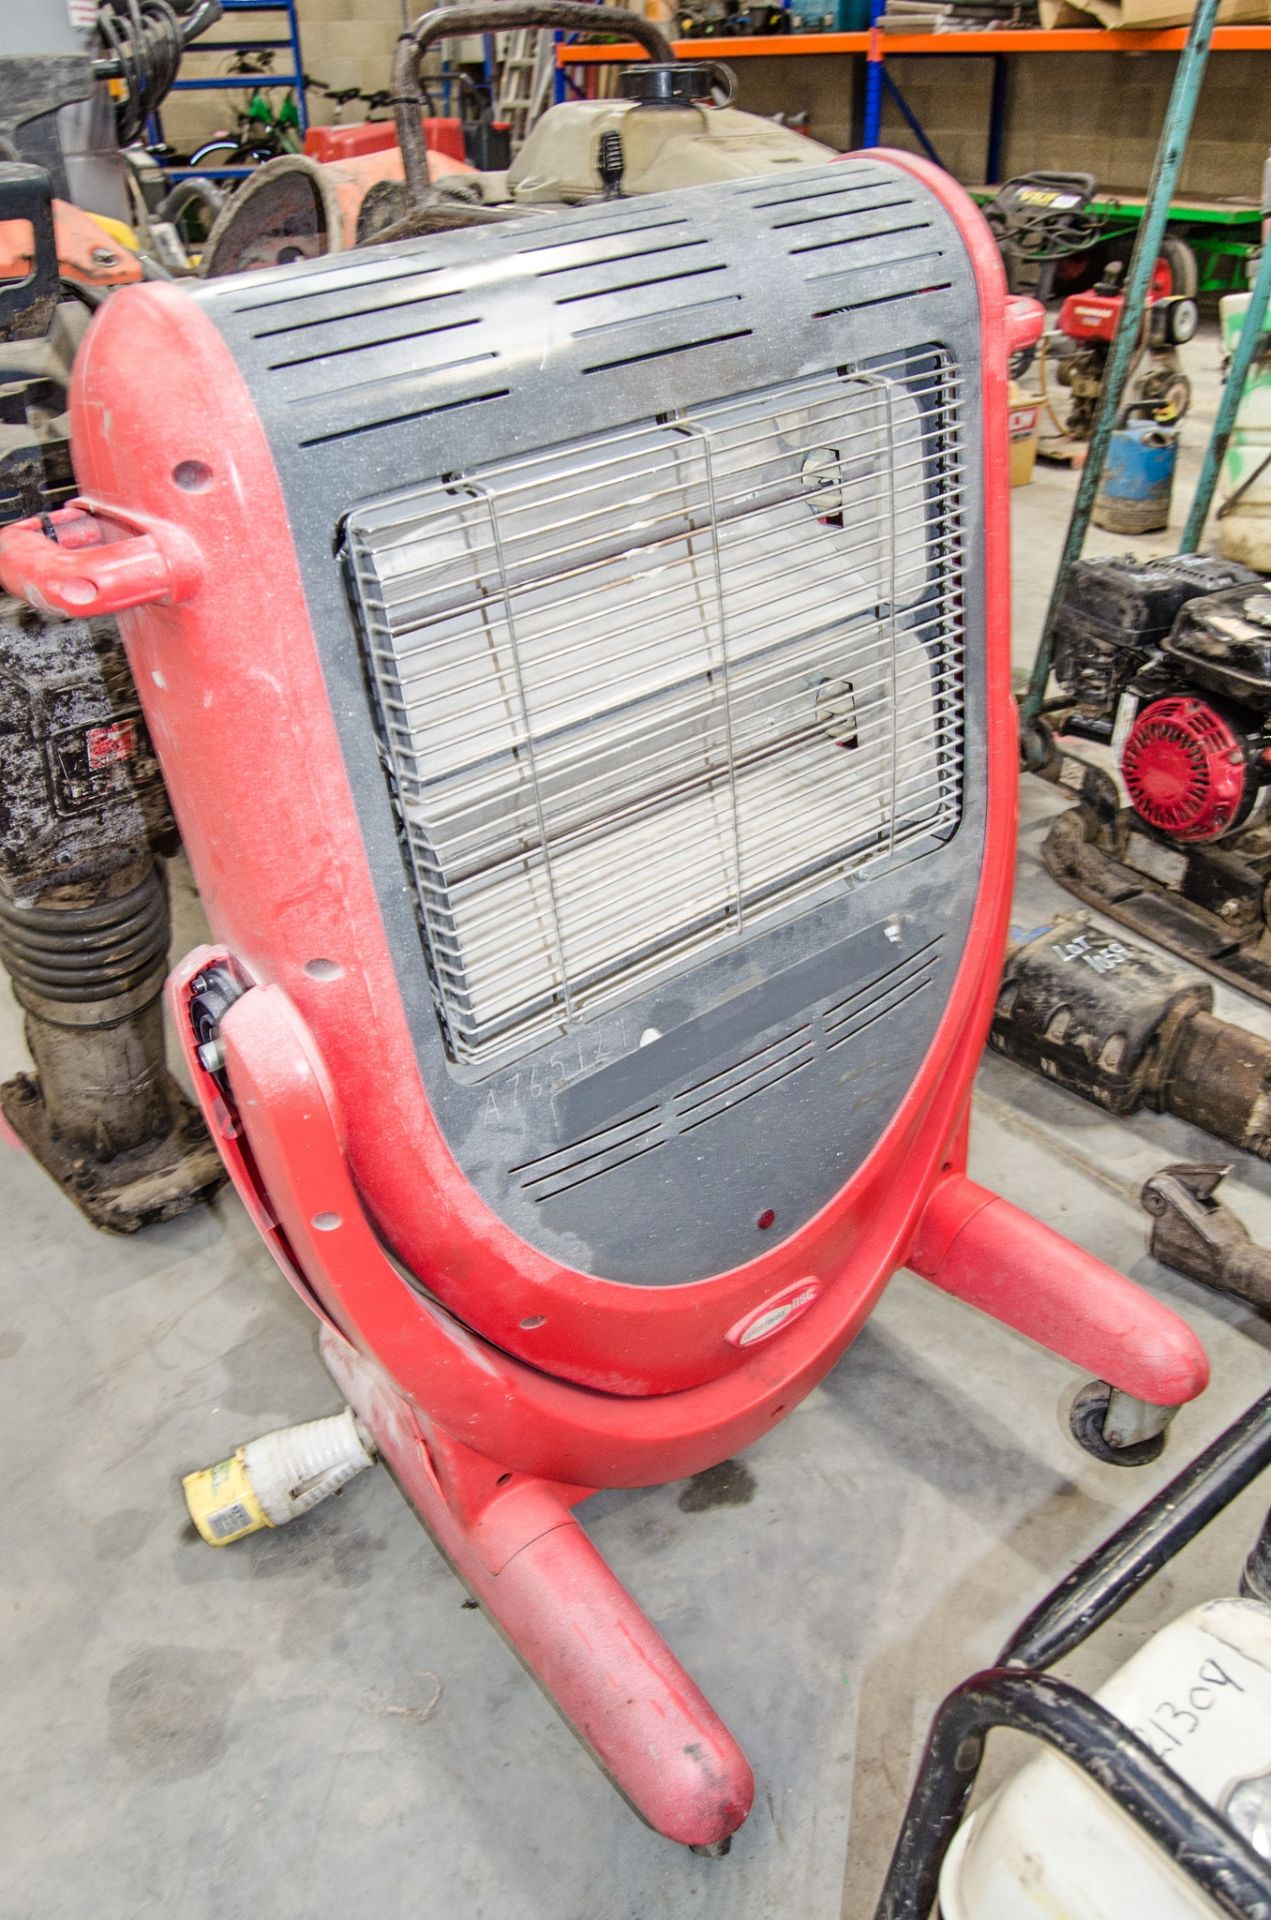 Elite 110v infra red heater A765121 ** casing damaged **